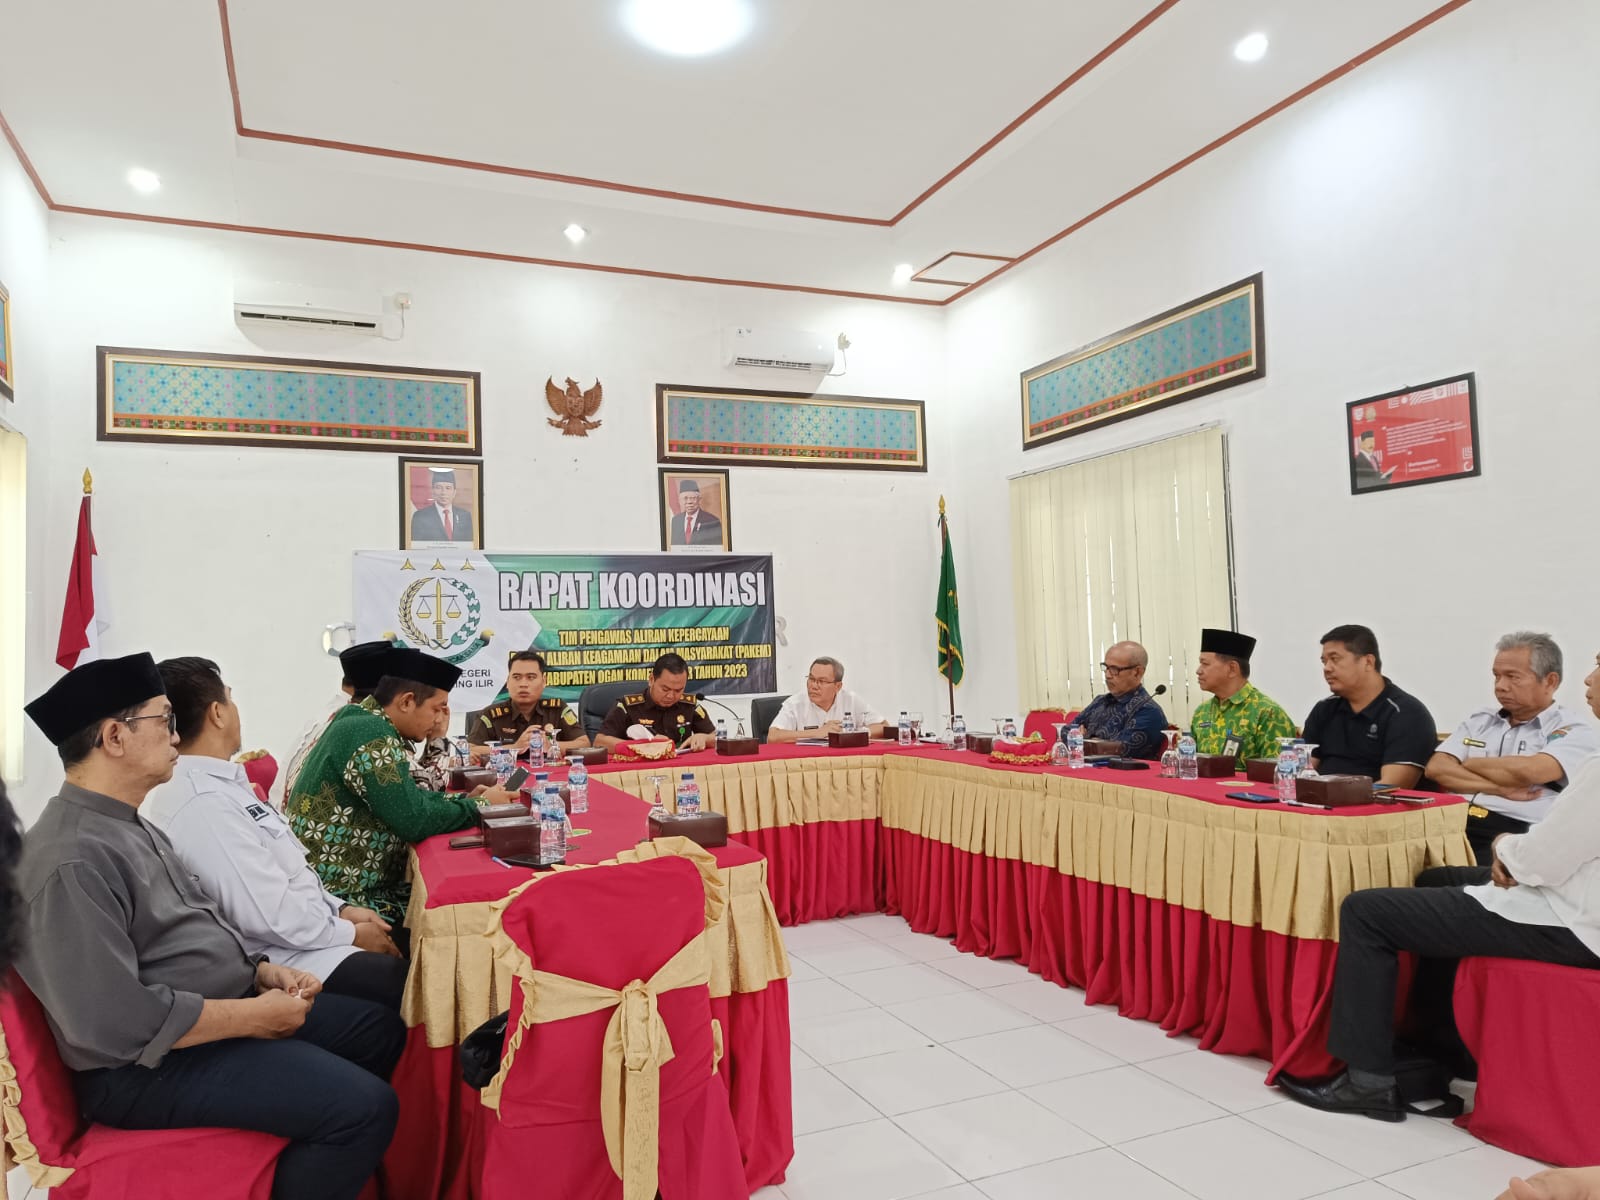 Tim Pakem Sebut Aliran Keagamaan di Kecamatan SP Padang dan Jejawi OKI Masih Kondusif